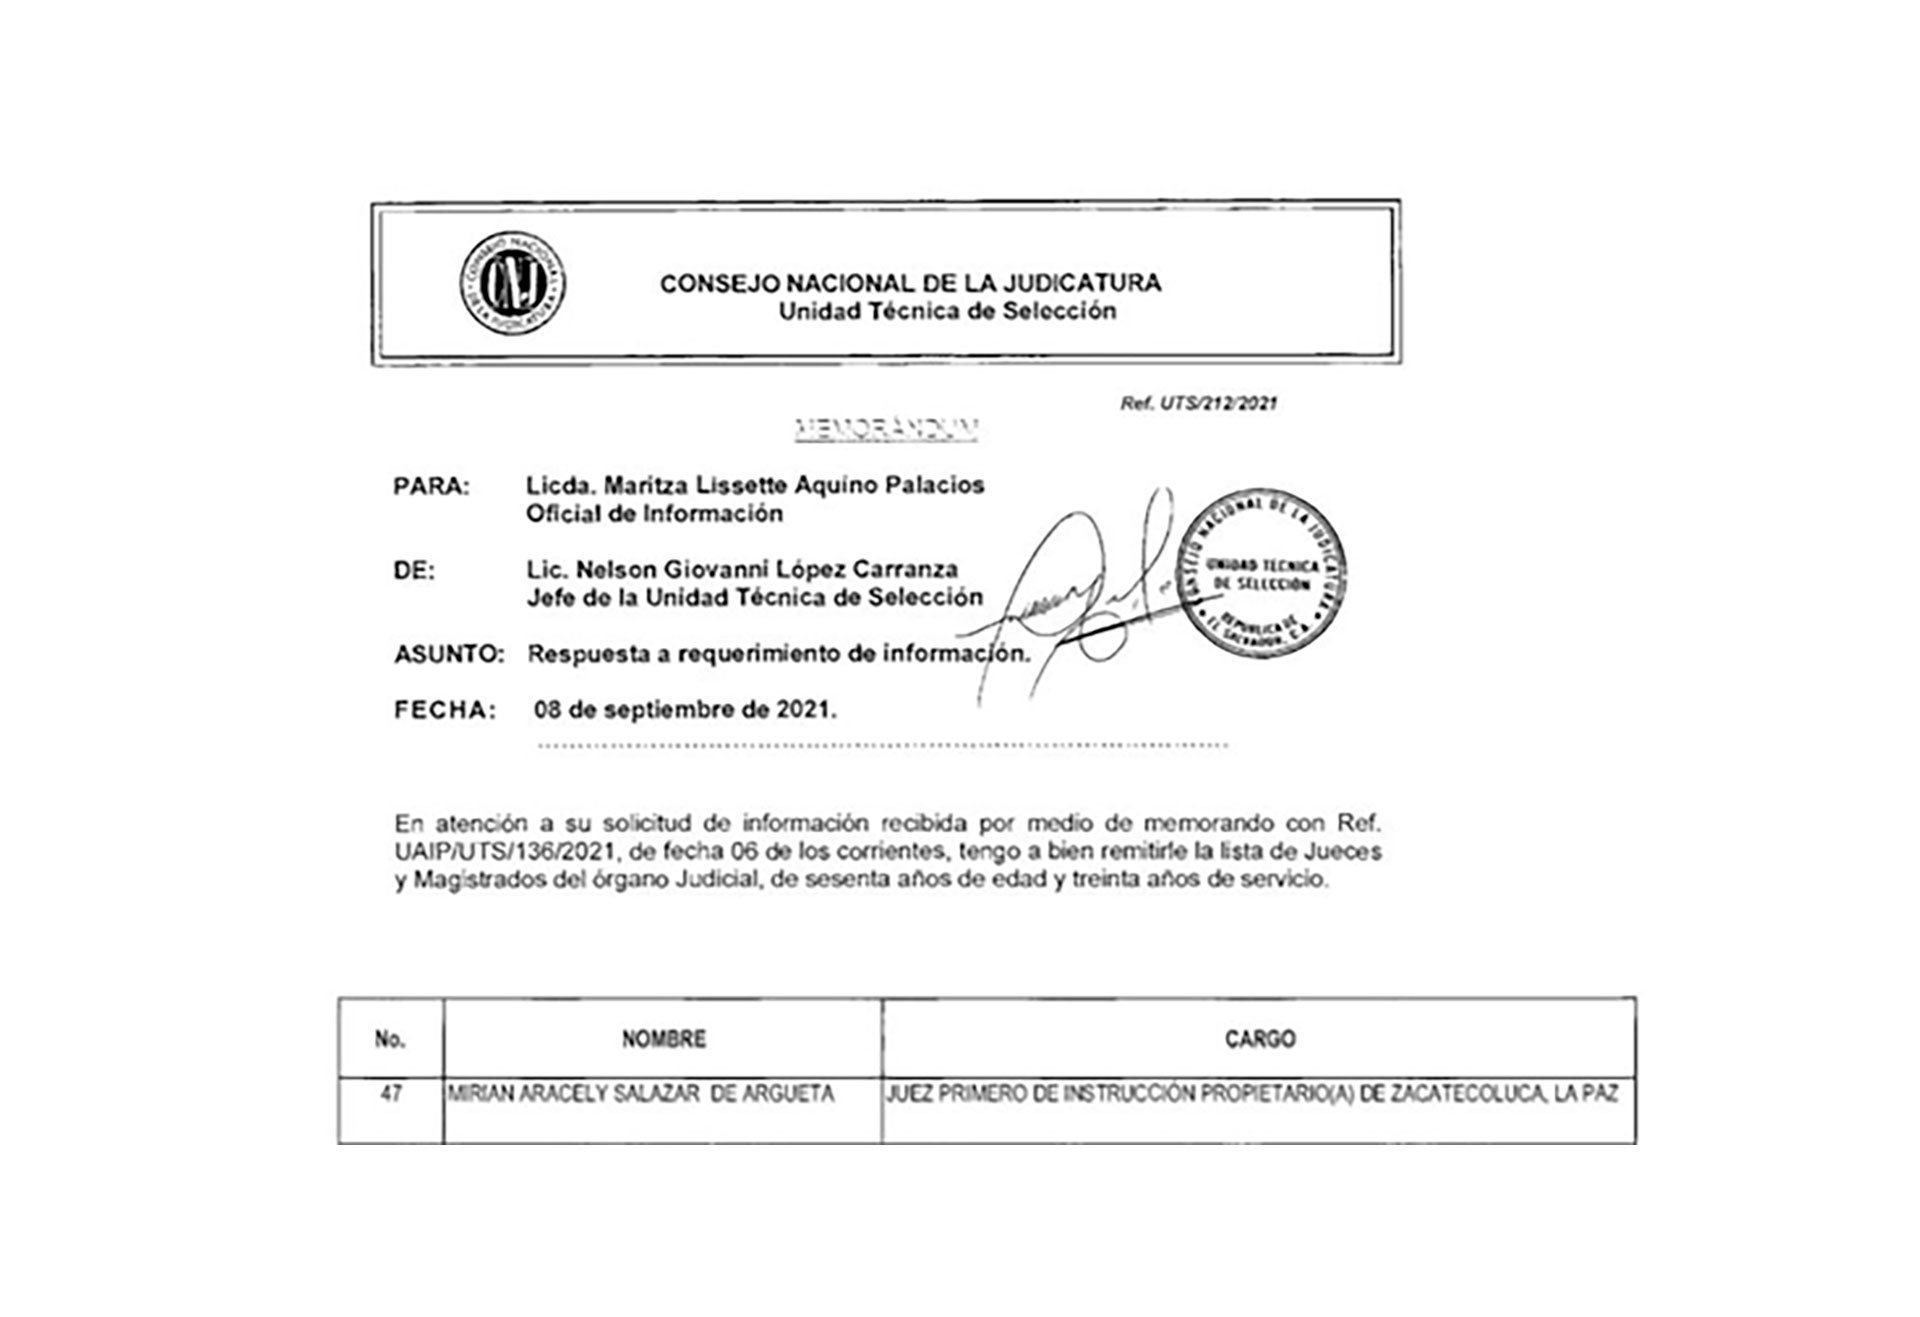 La Corte Suprema de Justicia de El Salvador dejó en el cargo a la jueza Miriam Salazar de Argueta a pesar de una reforma legal que la obligaba a jubilarse. La juzgadora ha fallado a favor de la fiscalía de Bukele en un caso contra opositores.